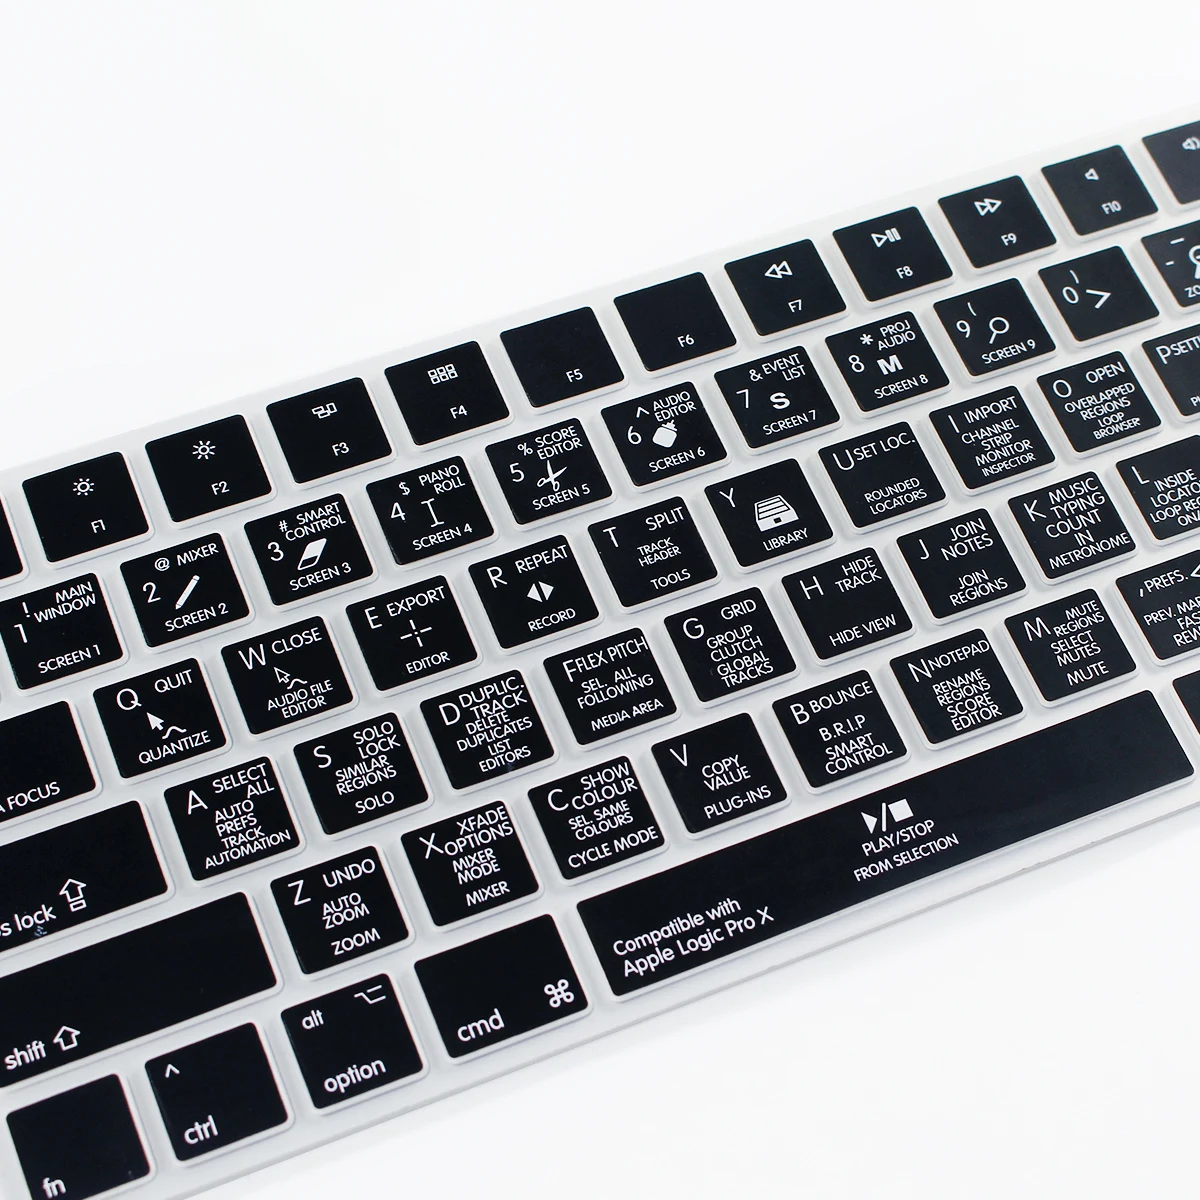 HRH Photoshop Ps Пыленепроницаемая силиконовая клавиатура защитная пленка для Apple Magic A1644 MLA22B/A US для клавиатуры